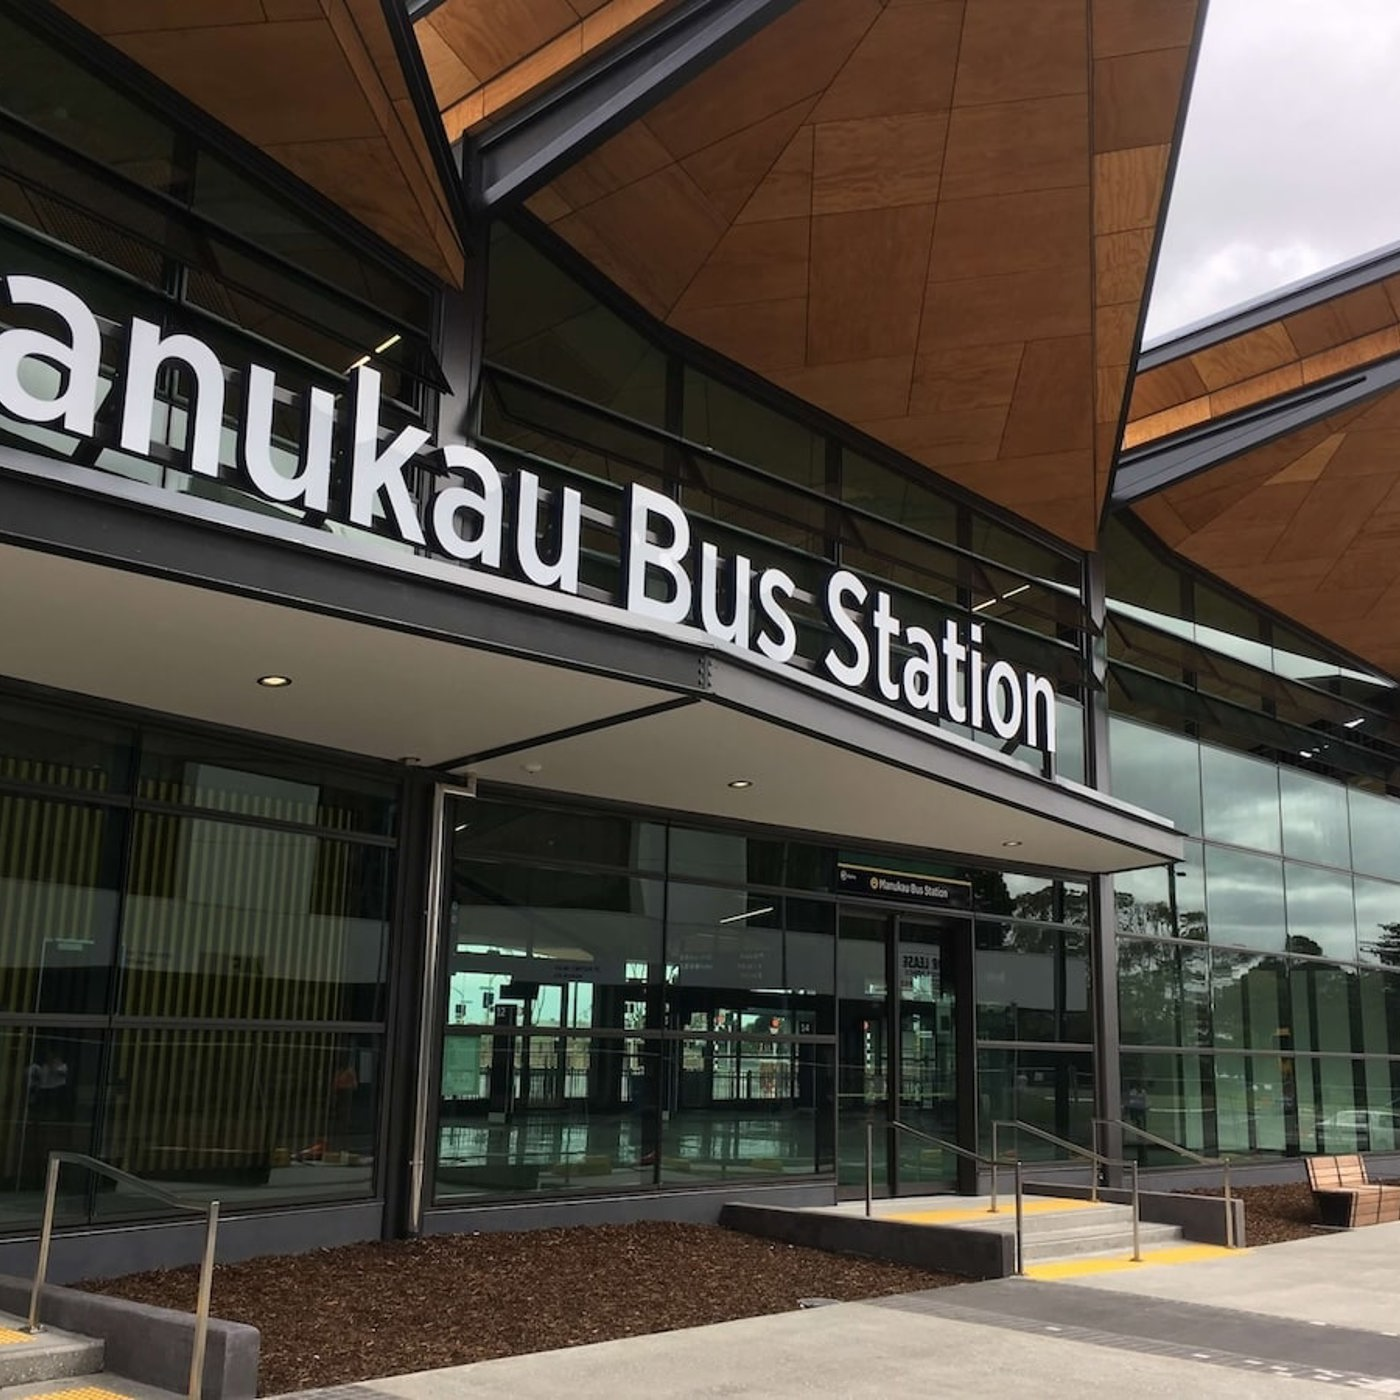 MANUKAU BUS STATION, NZ